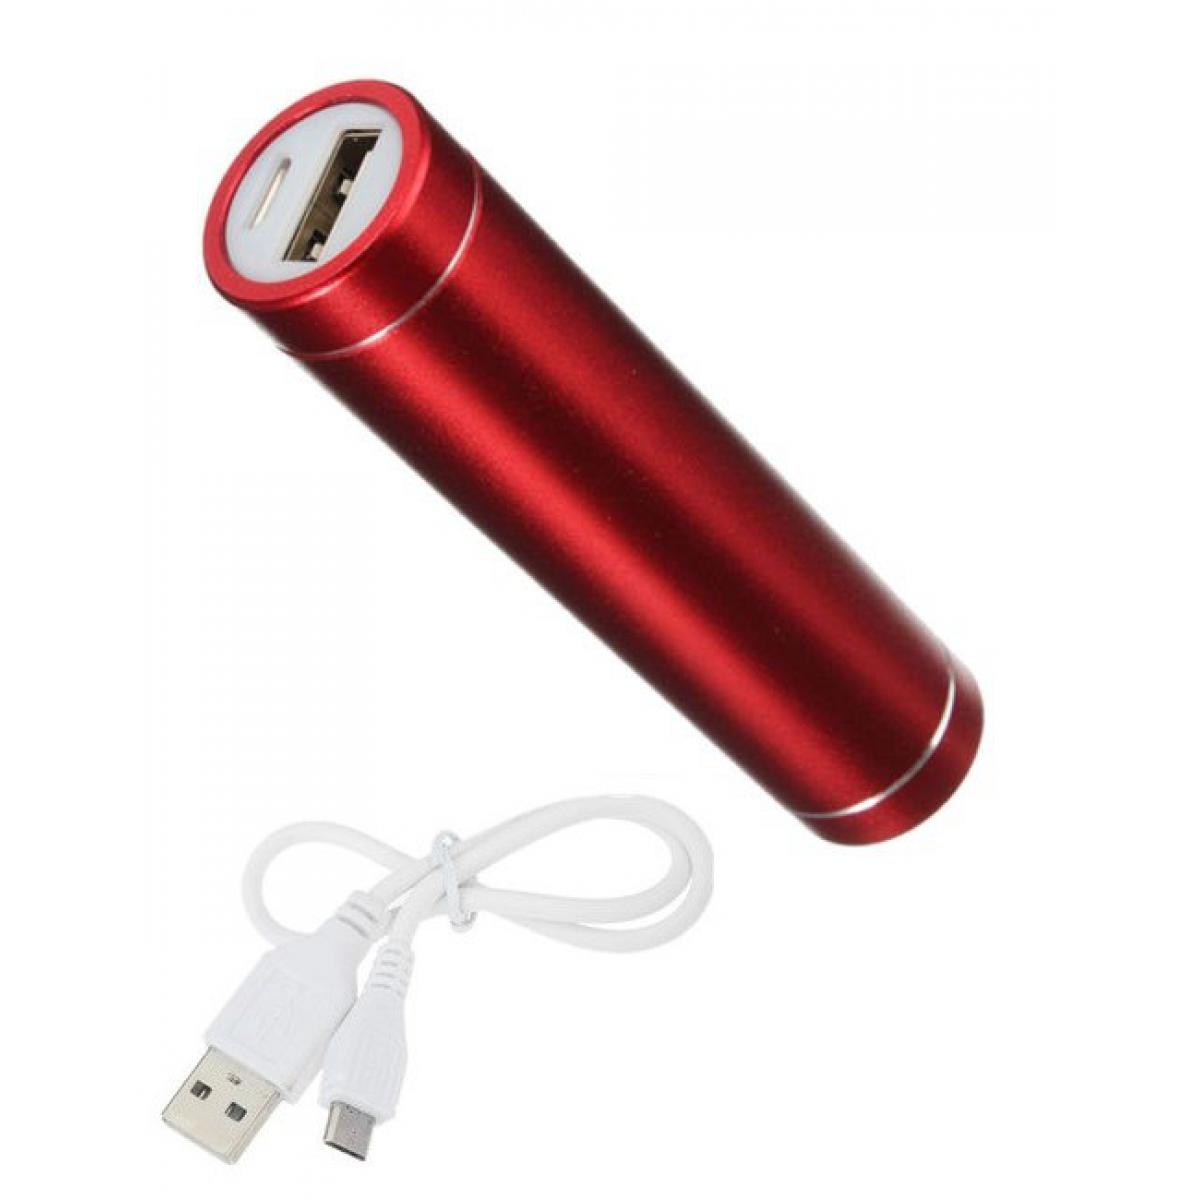 Shot - Batterie Chargeur Externe pour GOOGLE Pixel 4 Power Bank 2600mAh avec Cable USB/Mirco USB Secours Telephone (ROUGE) - Chargeur secteur téléphone